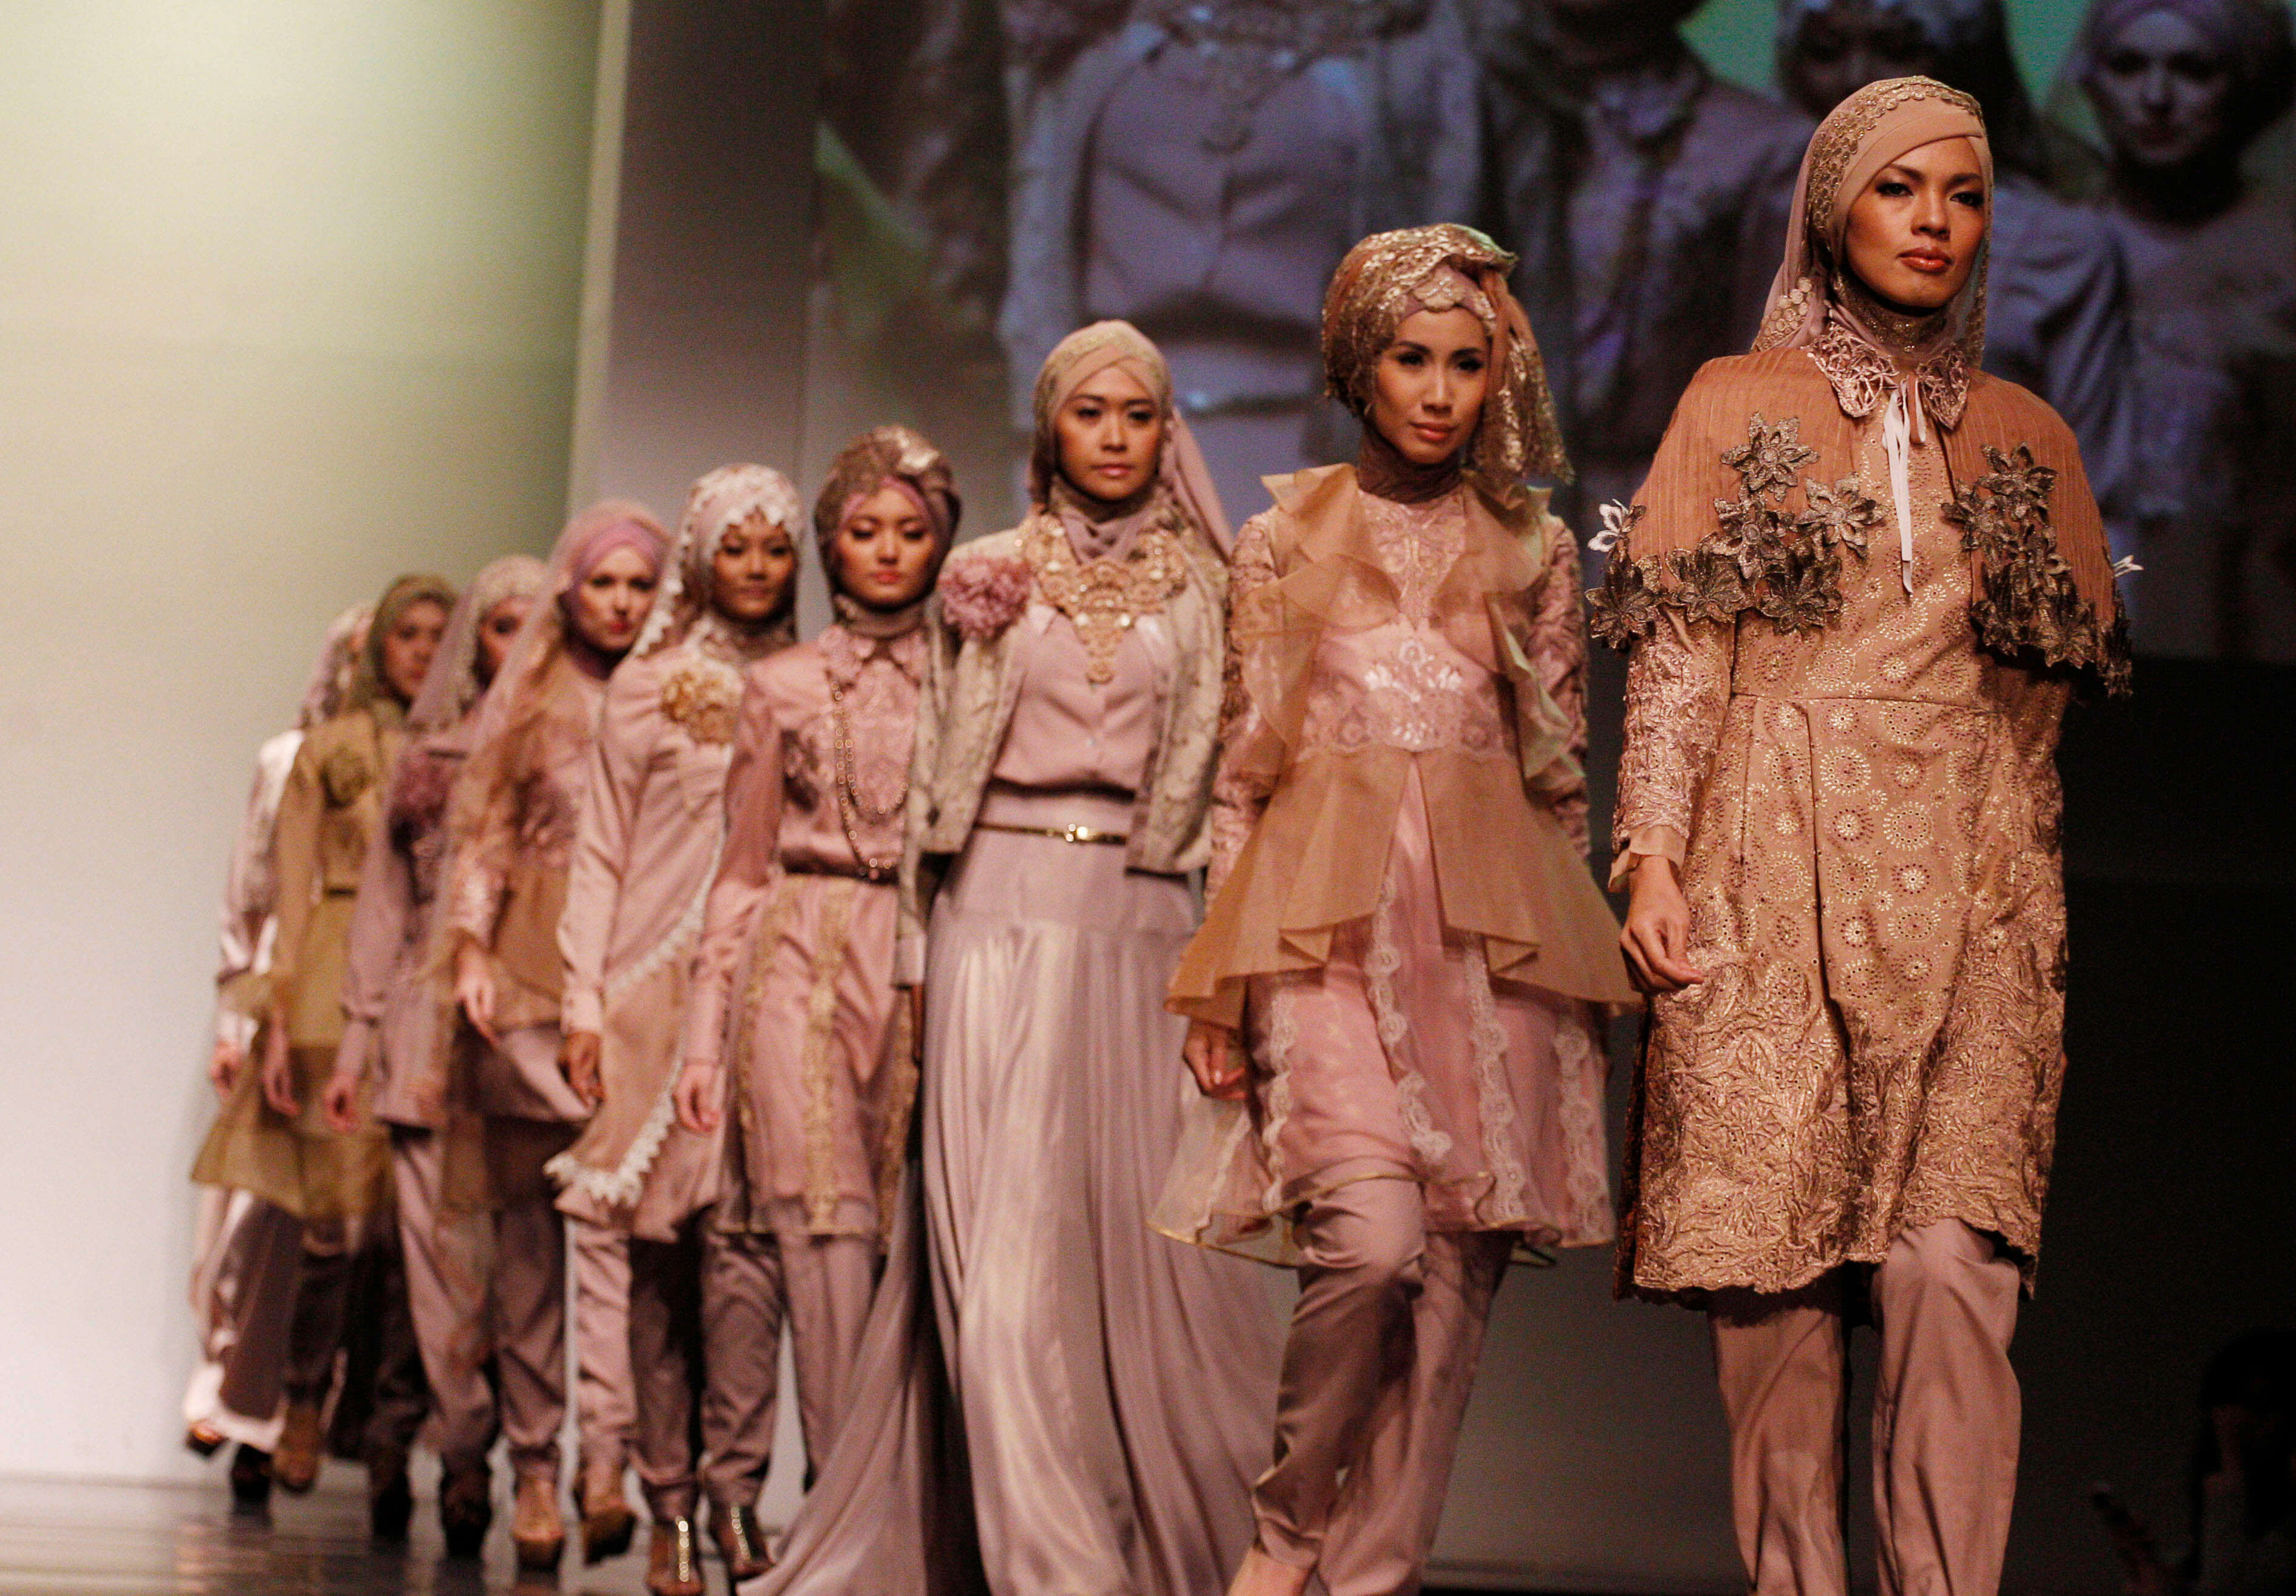 Мировая индустрия мусульманской моды оценивается в 96 миллиардов долларов. Это означает, что в ней занято огромное количество модельеров одежды для женщин, исповедующих ислам, и предпринимателей, которые обеспечивают процветание этой отрасли.